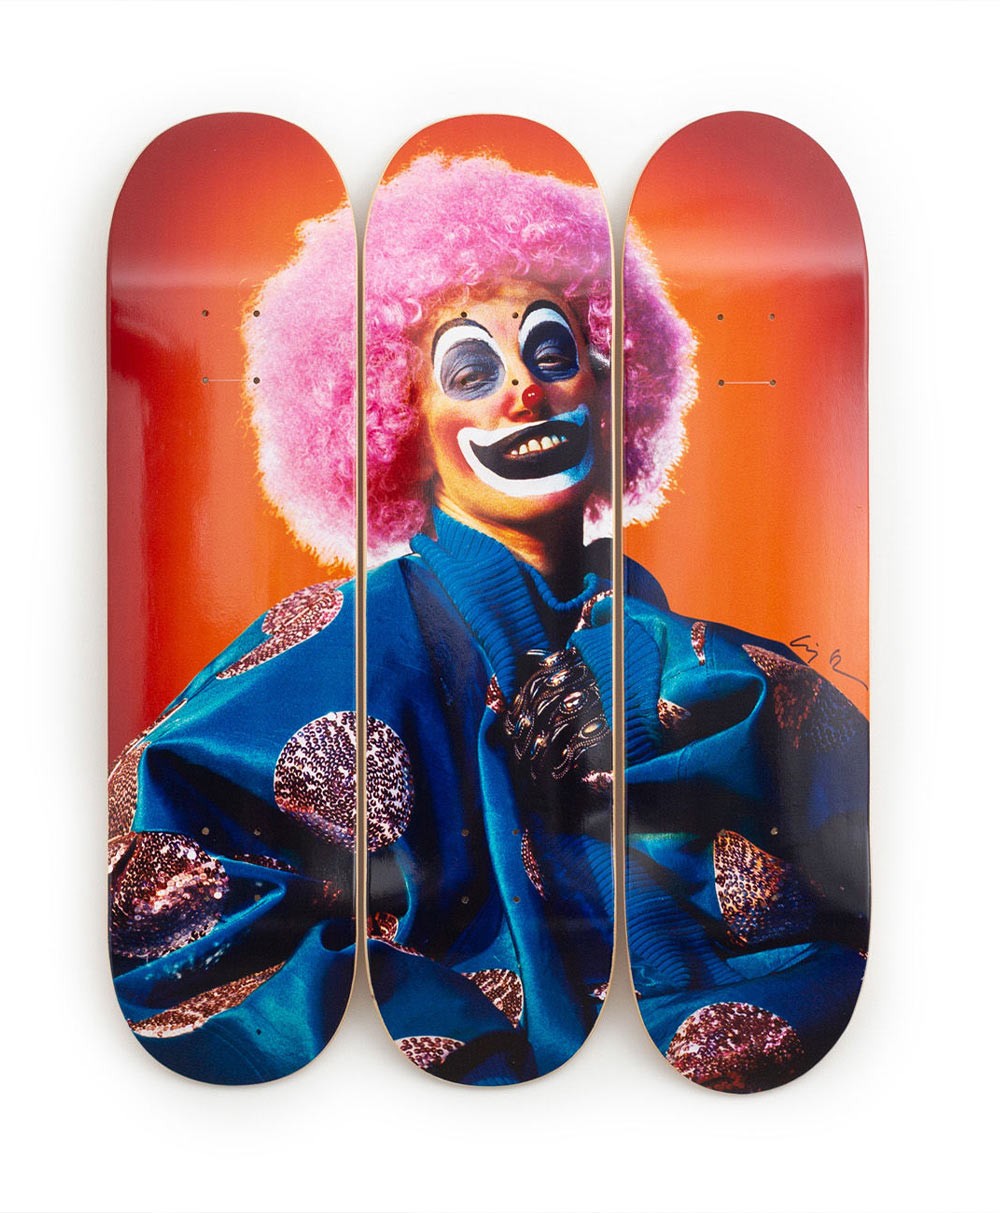 Produktbild "Clown" designed by Cindy Sherman von The Skateroom im RAUM Conceptstore